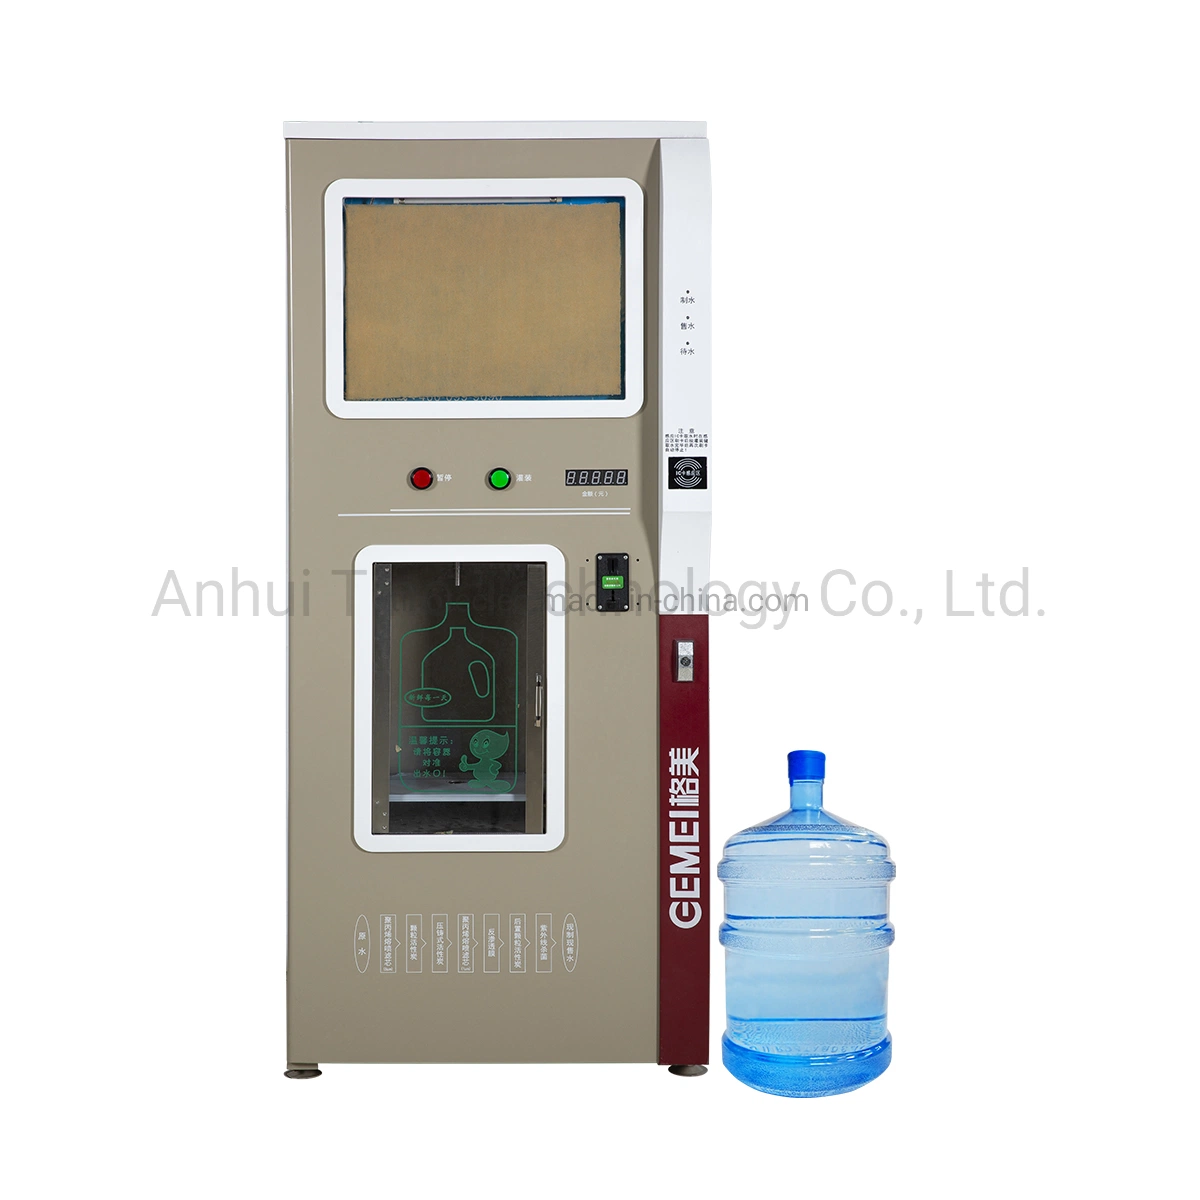 Auto OEM Coin exploité RO Vending machine usine d'eau douce